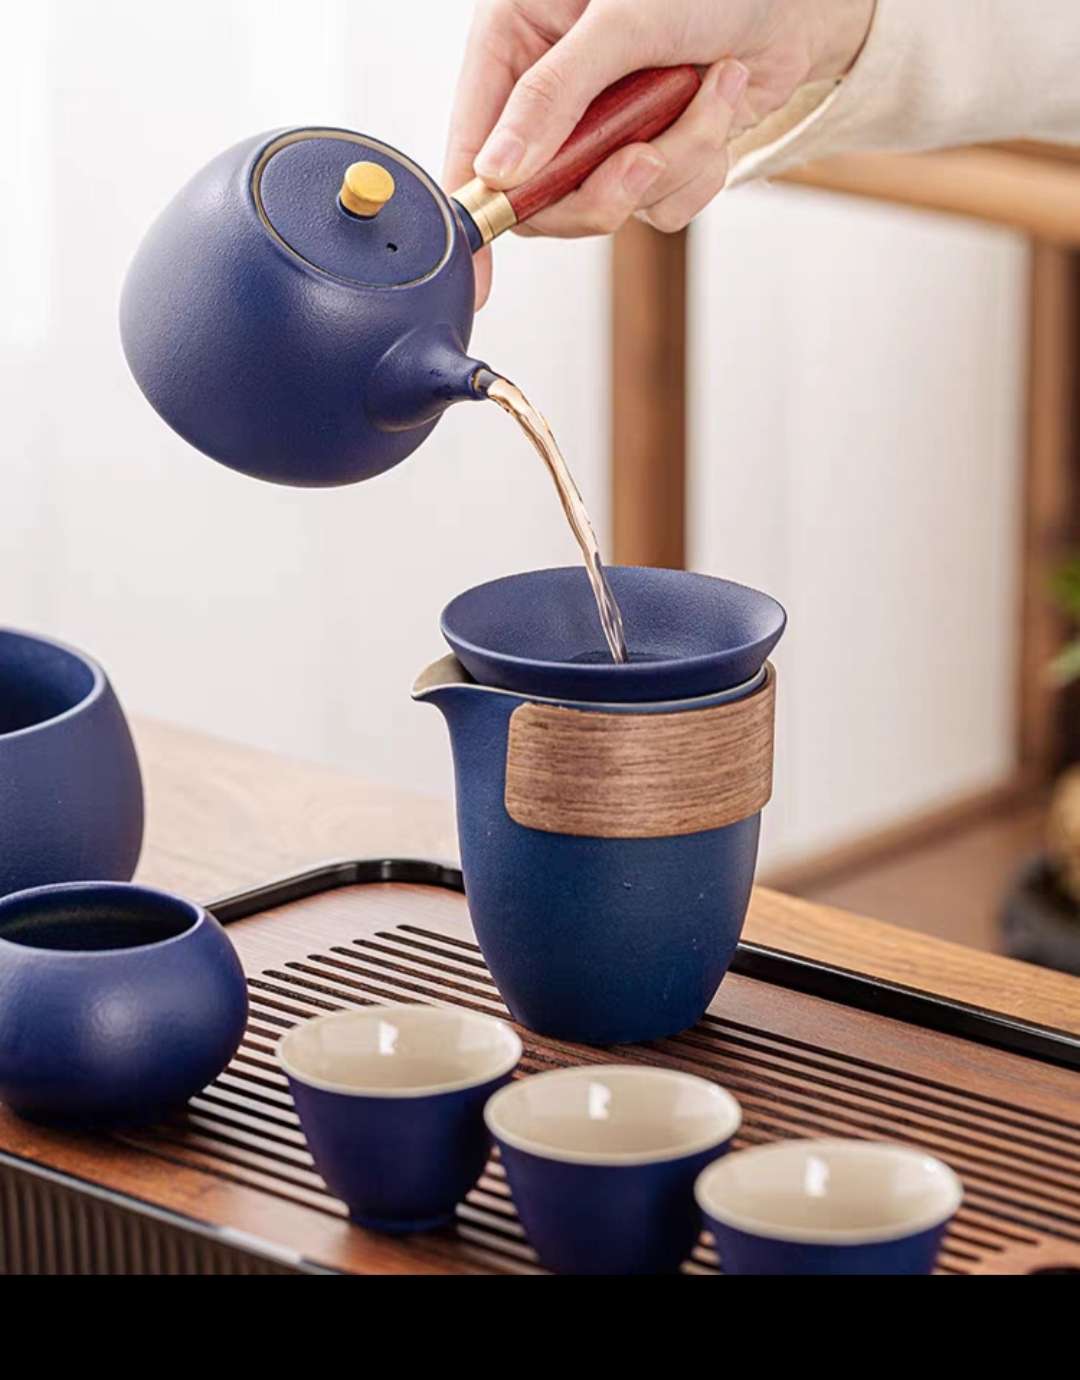 茶具/粗陶系列茶具产品图